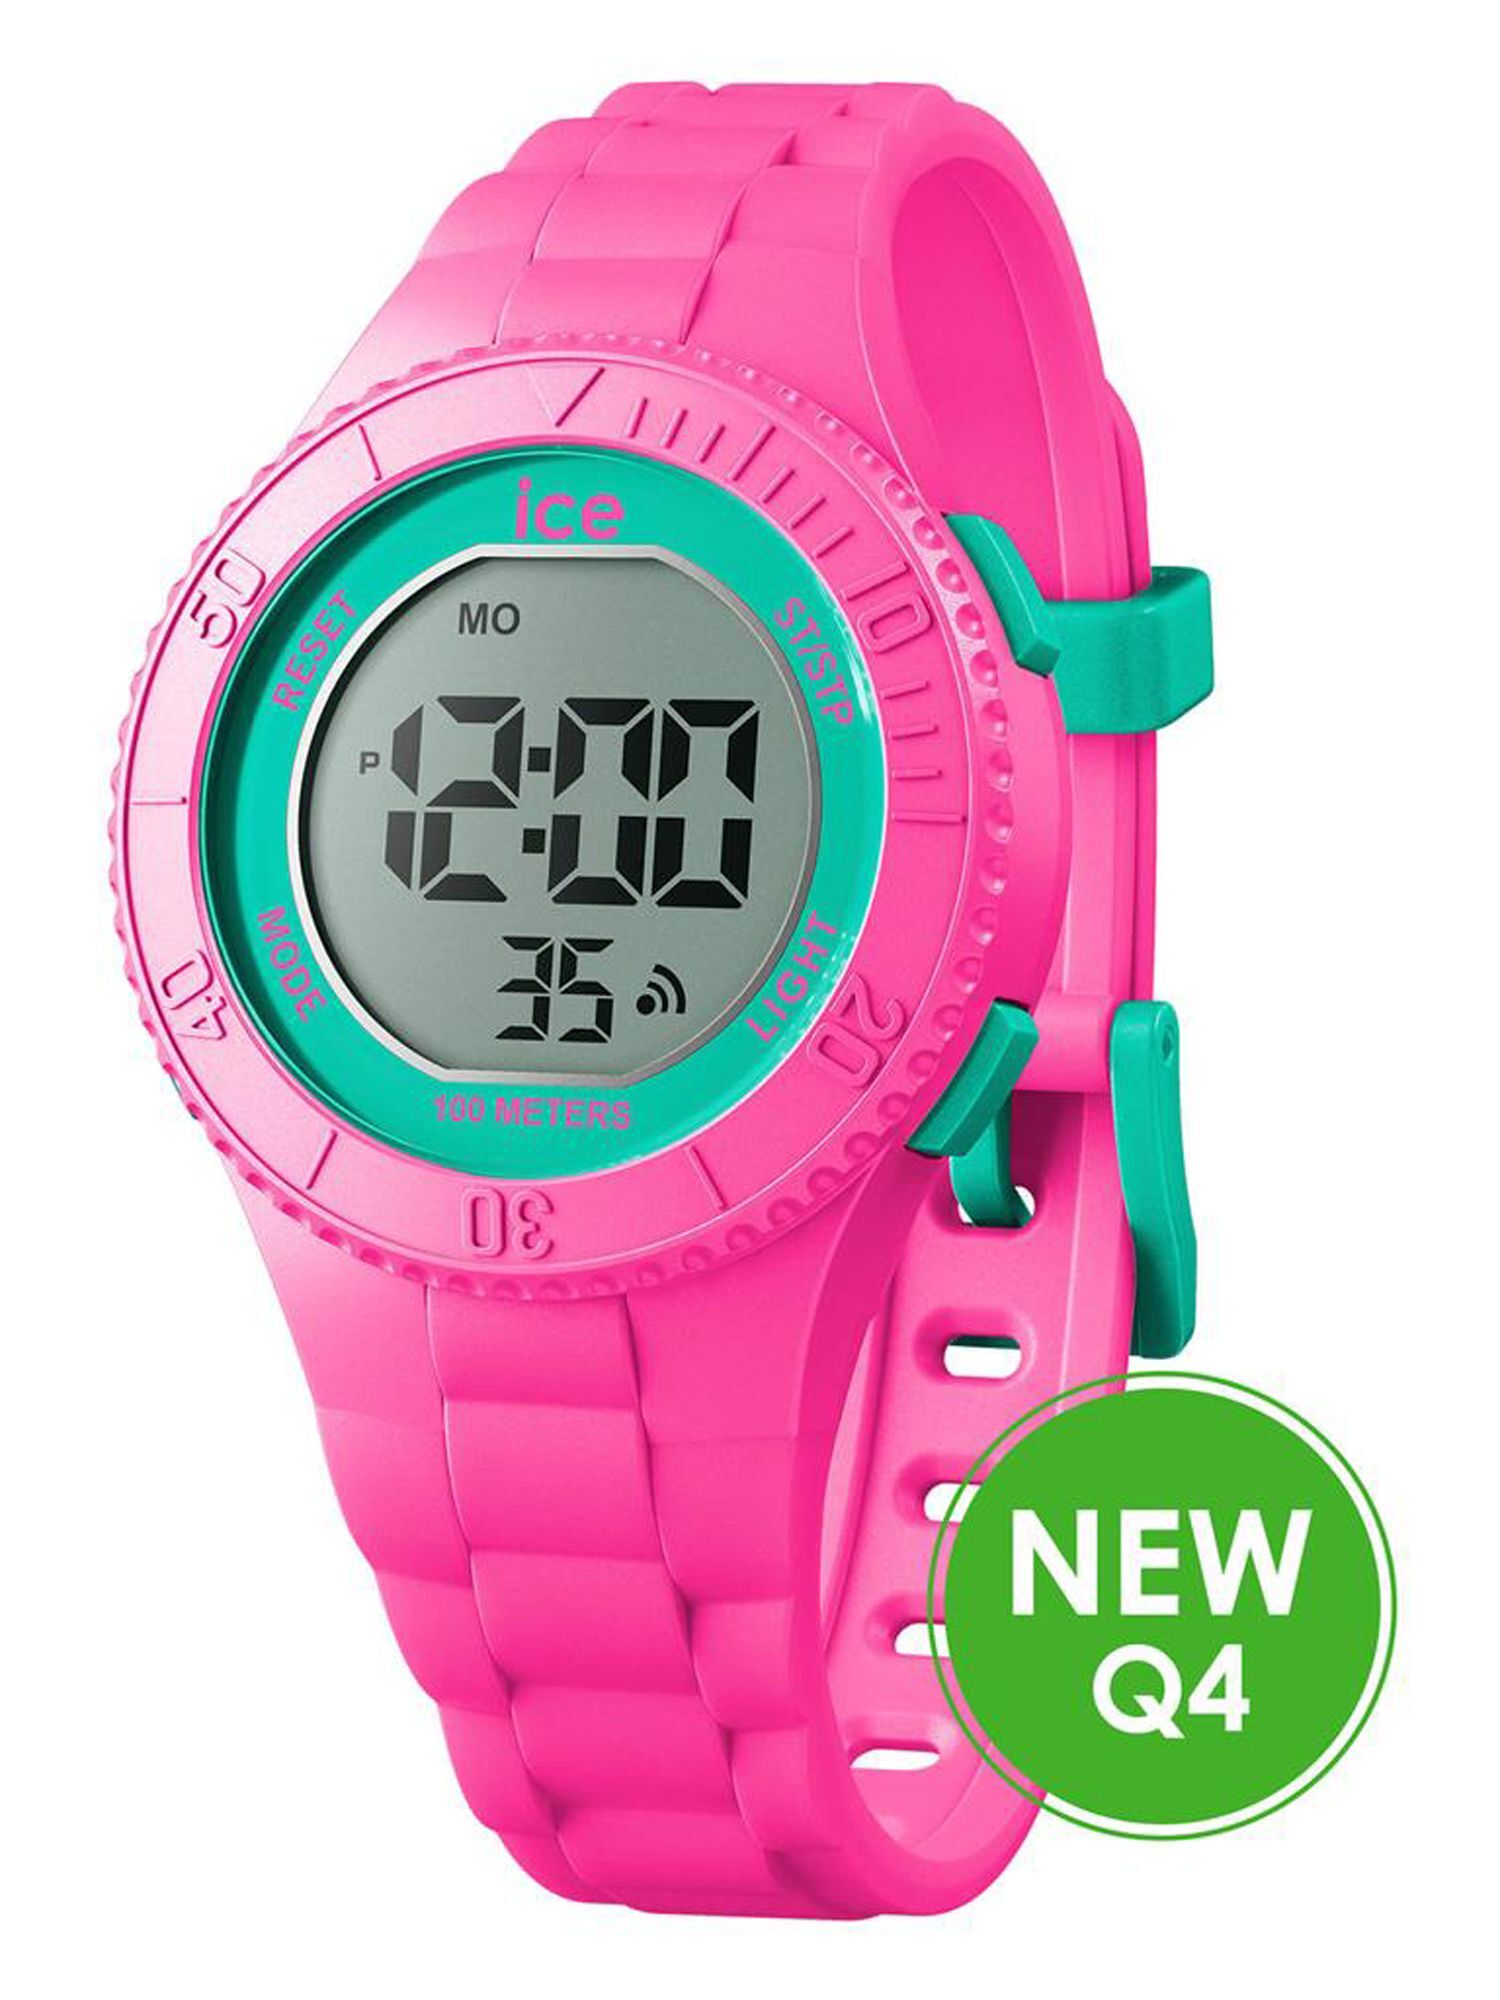 Hodinky Ice-Watch 021275 ICE digit Pink turqouise malé dievčenské hodinky s budíkom ružové